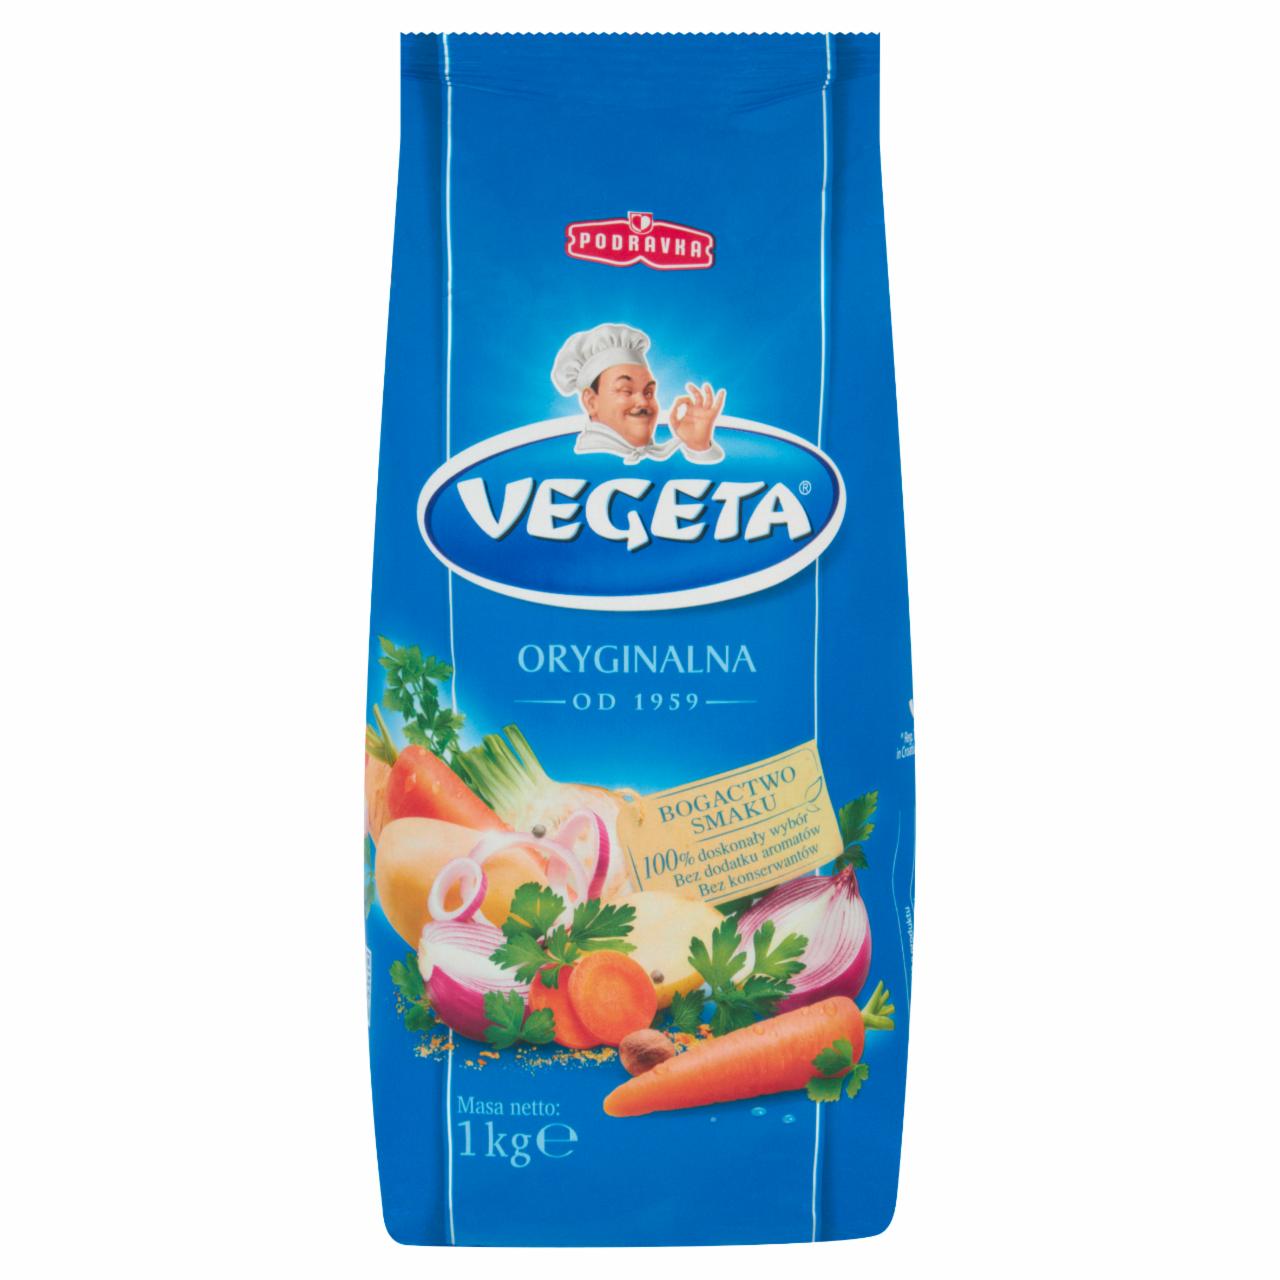 Zdjęcia - Vegeta Przyprawa warzywna do potraw 1 kg